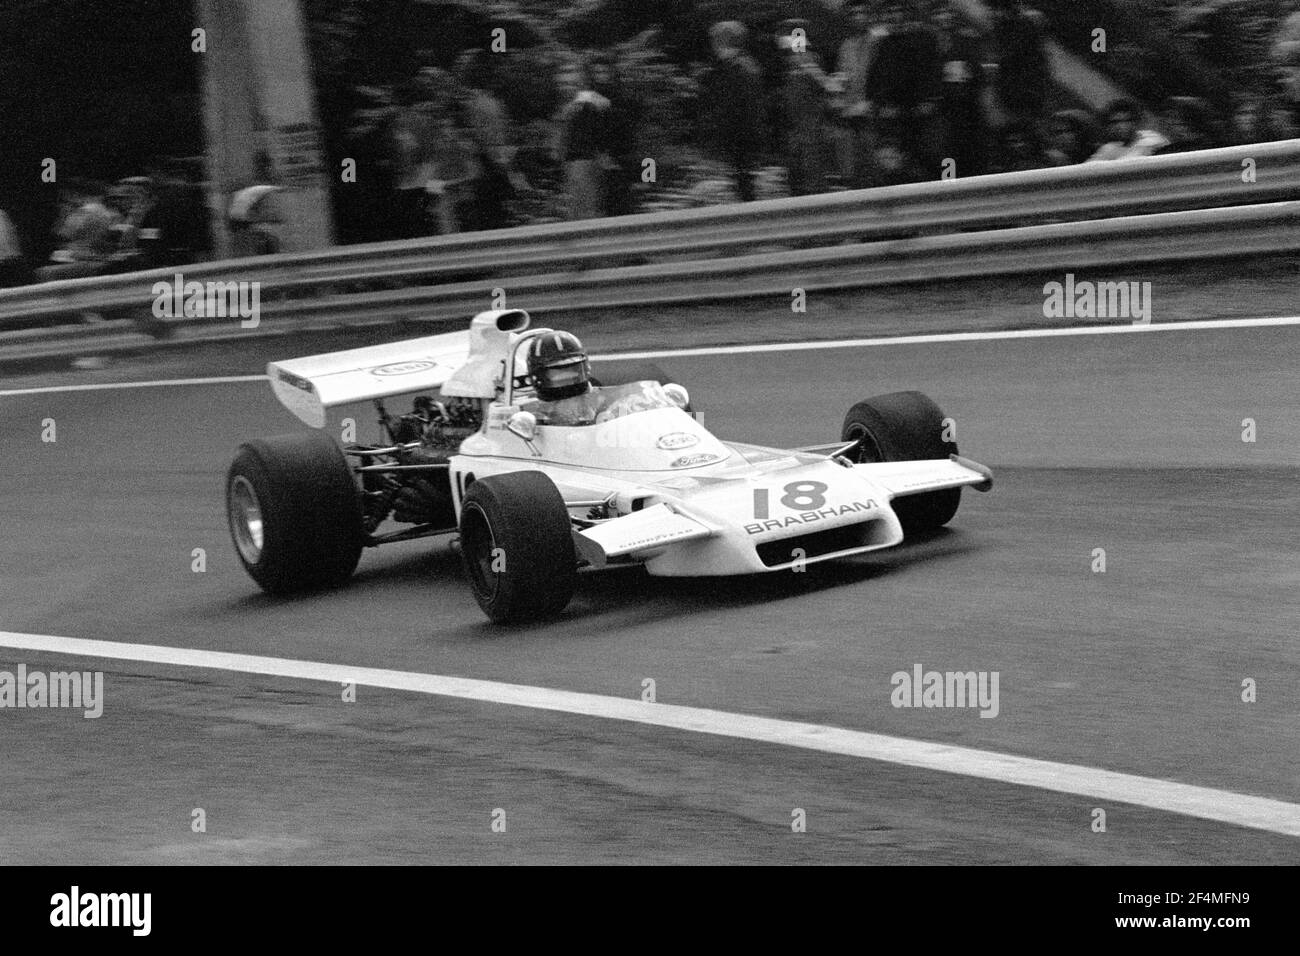 Graham HILL fährt BRM F1 Auto in voller Geschwindigkeit während 1972 Grand Prix de France, in Charade Circuit in der Nähe von Clermont-Ferrand. Stockfoto